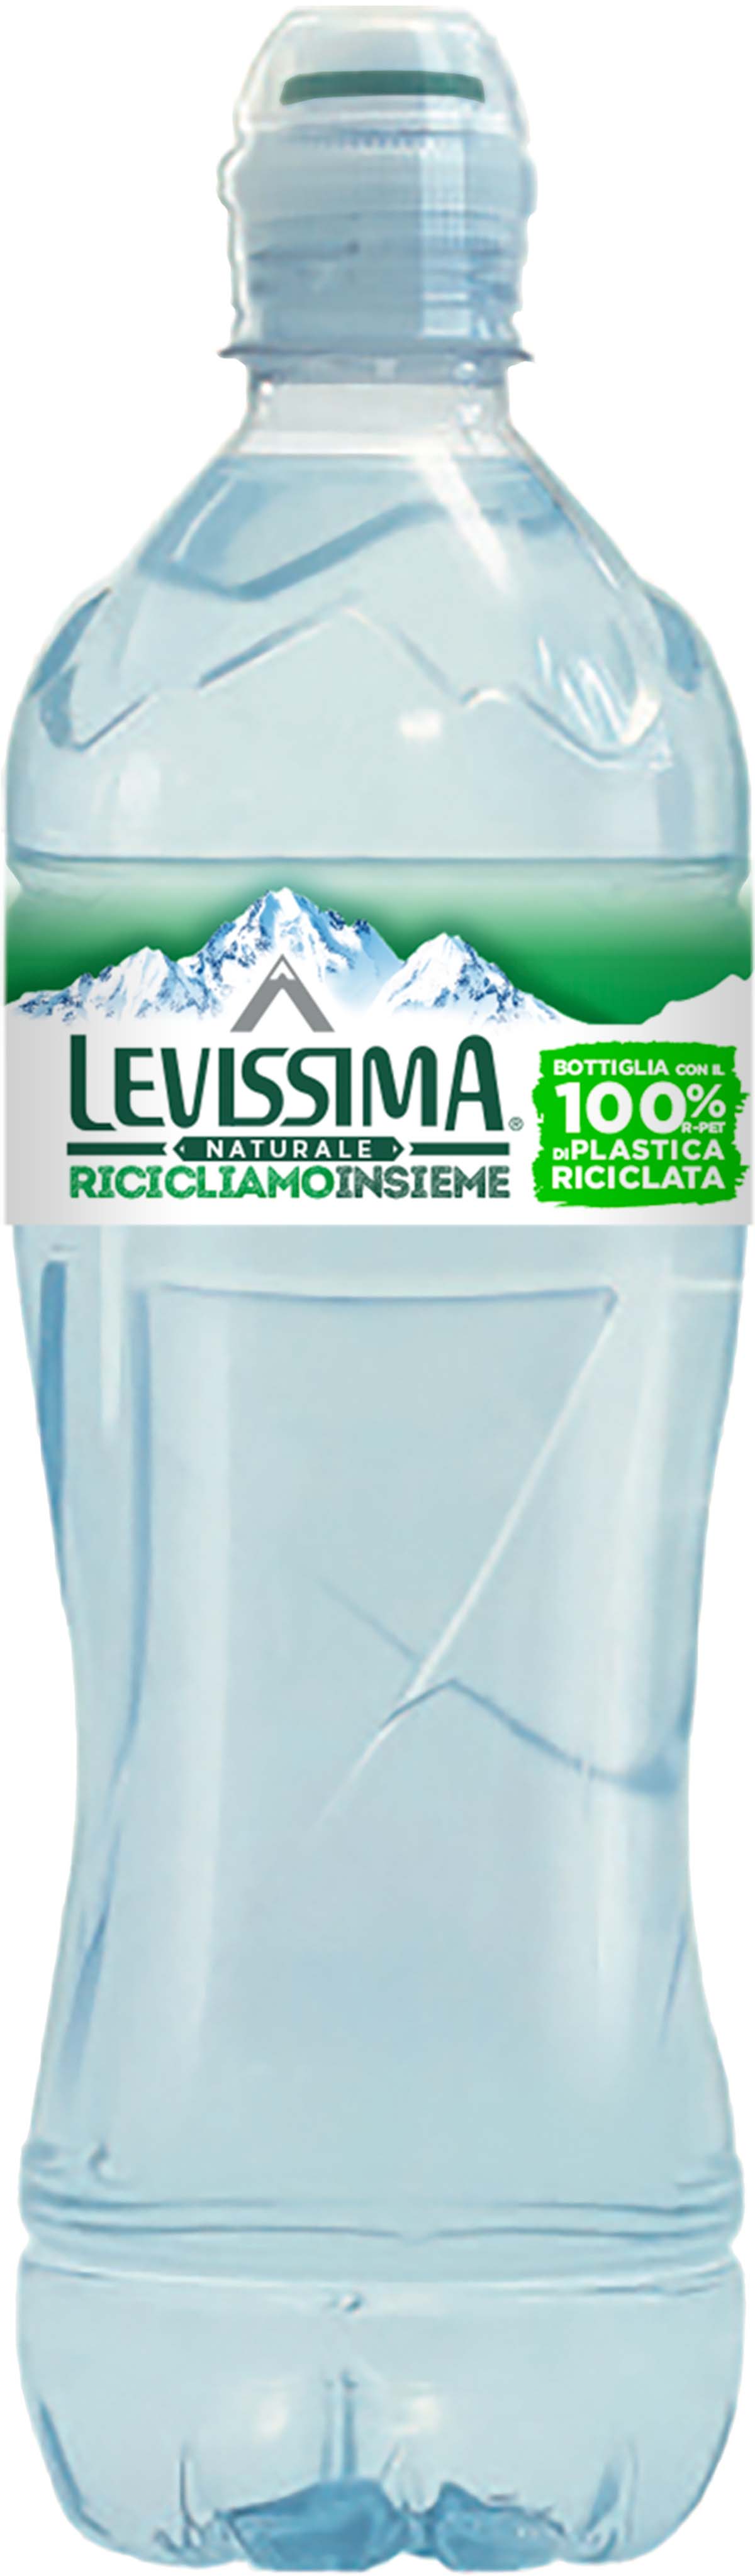 Levissima Acqua Minerale Frizzante 75 cl 100% RPET - Bottiglia